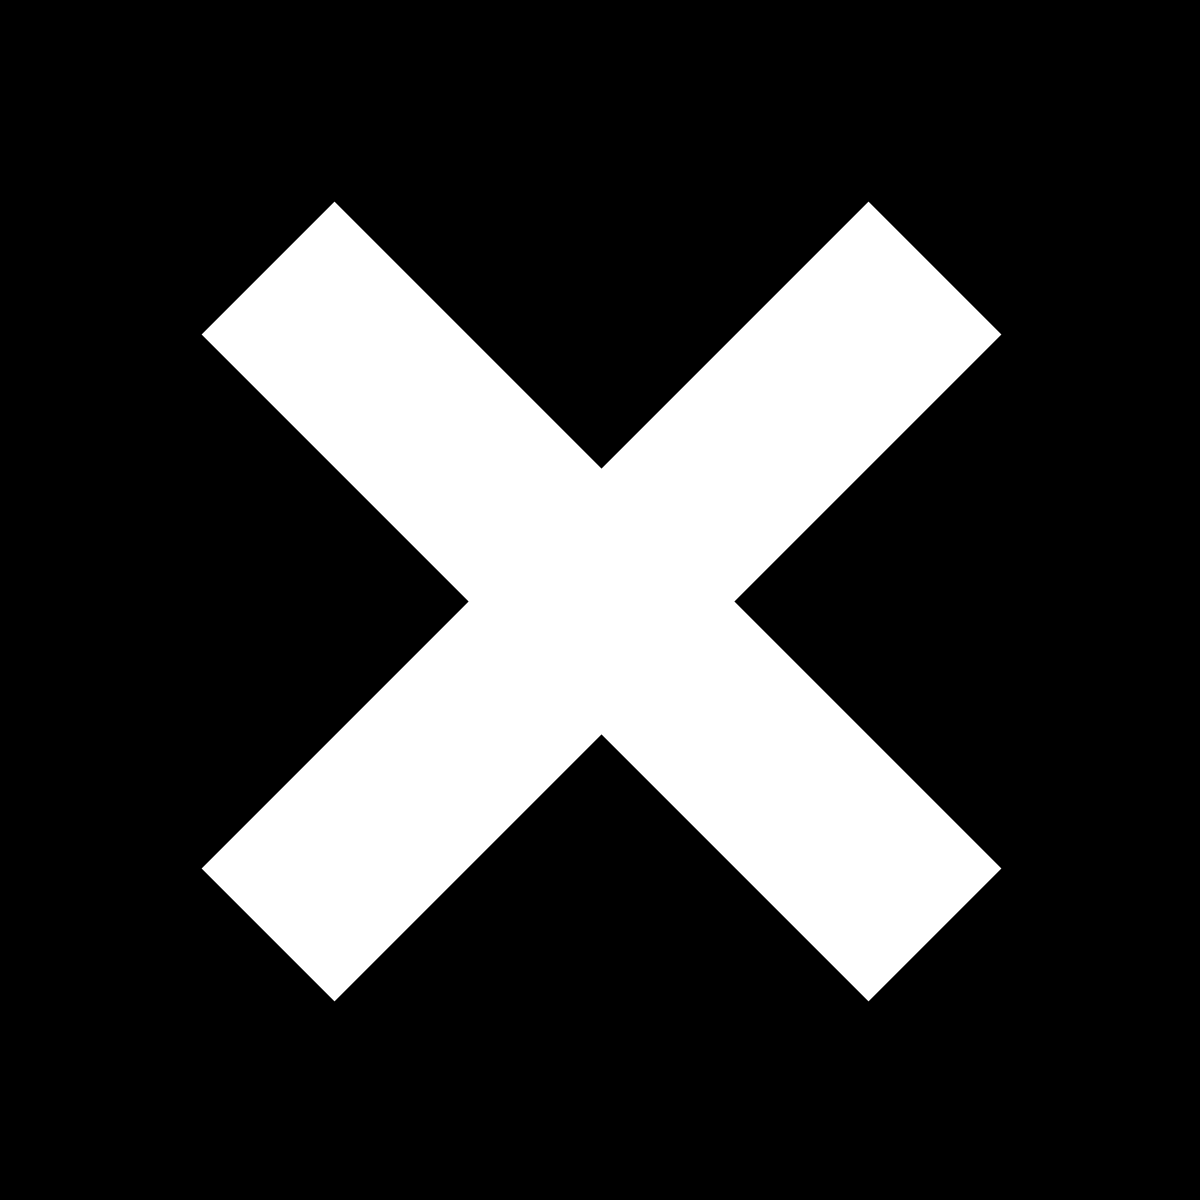 The XX - XX Vinyl